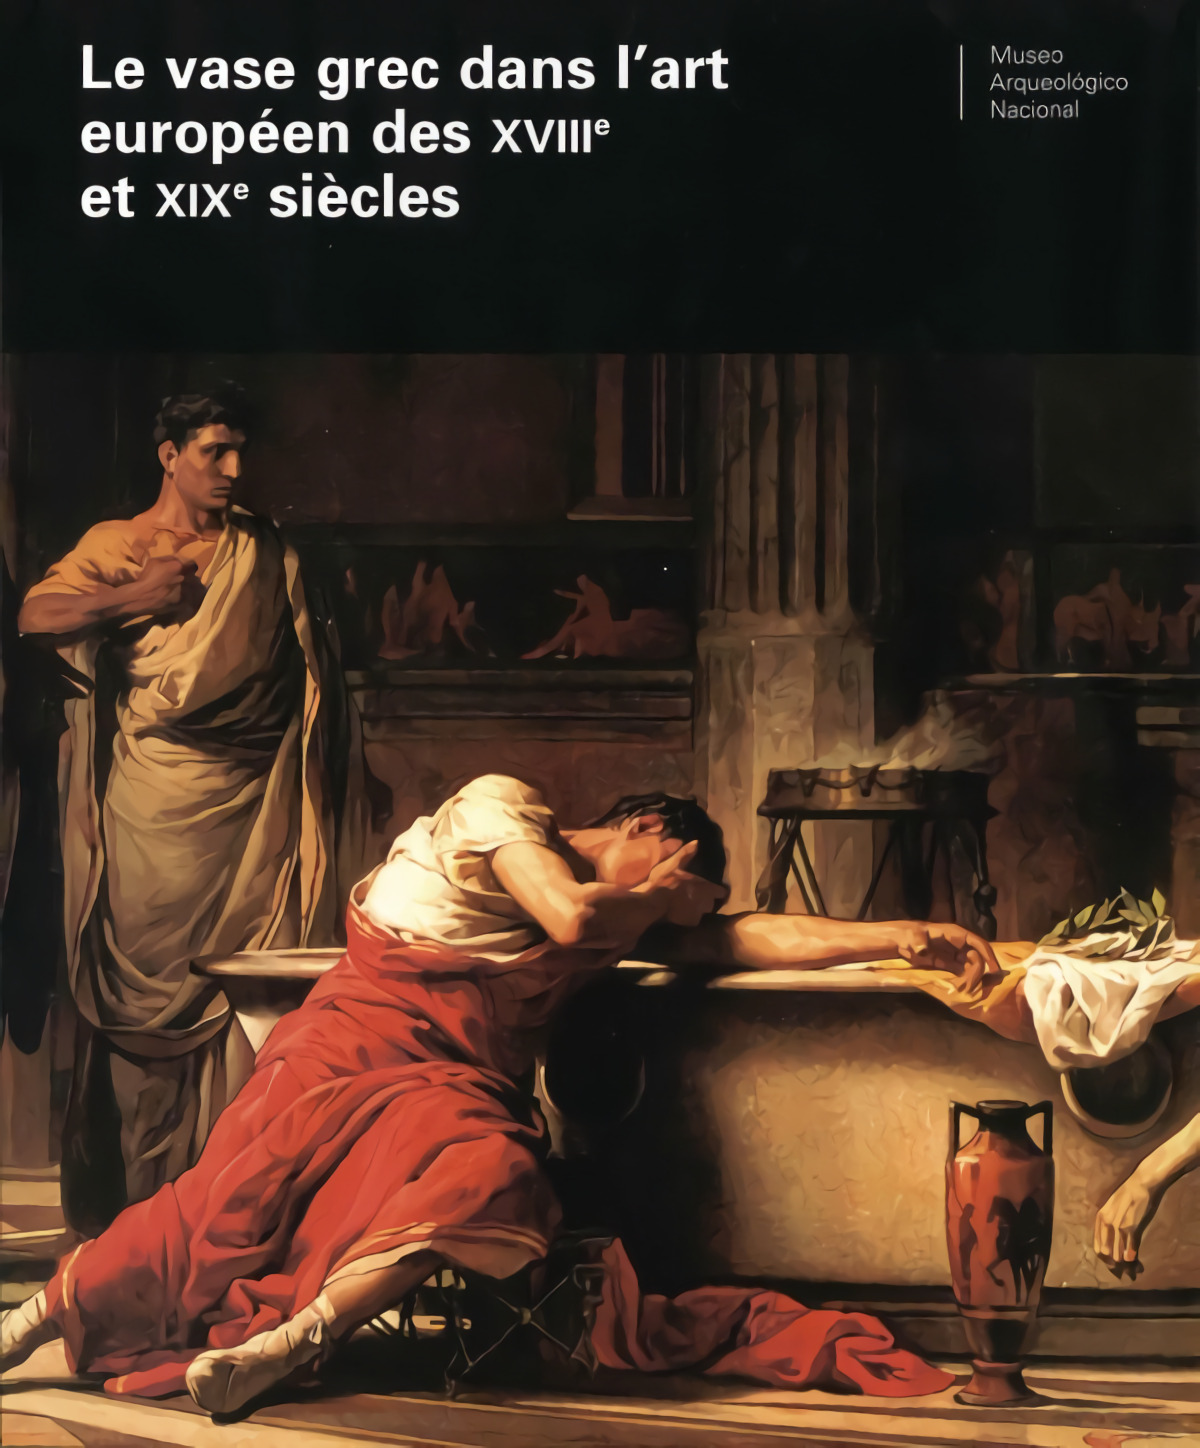 Vaso griego en el arte europeo de los siglos xviii y xix - M Arqueologico